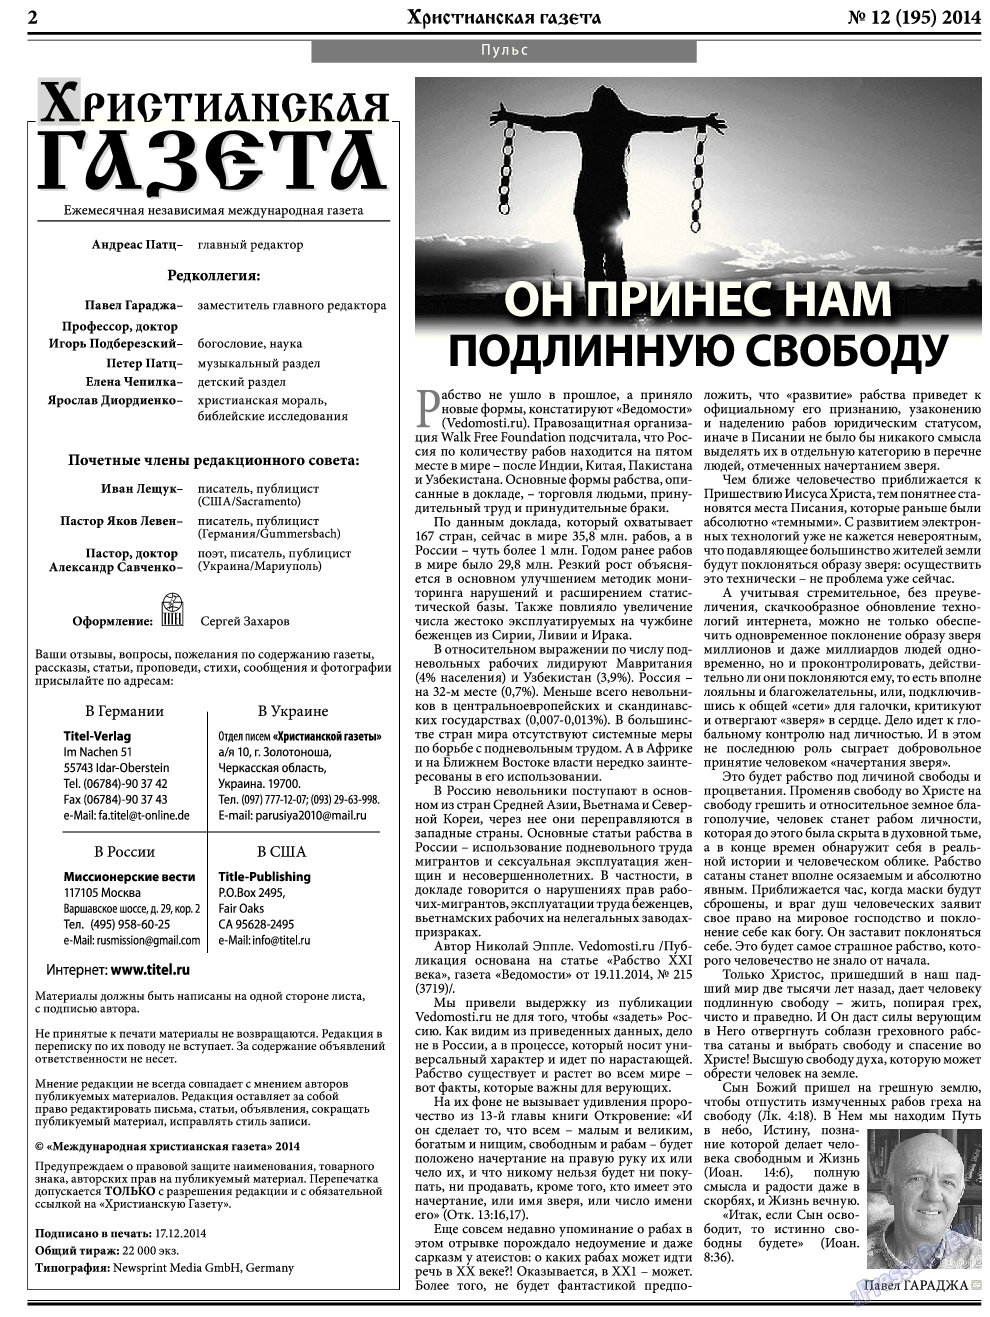 Христианская газета, газета. 2014 №12 стр.2